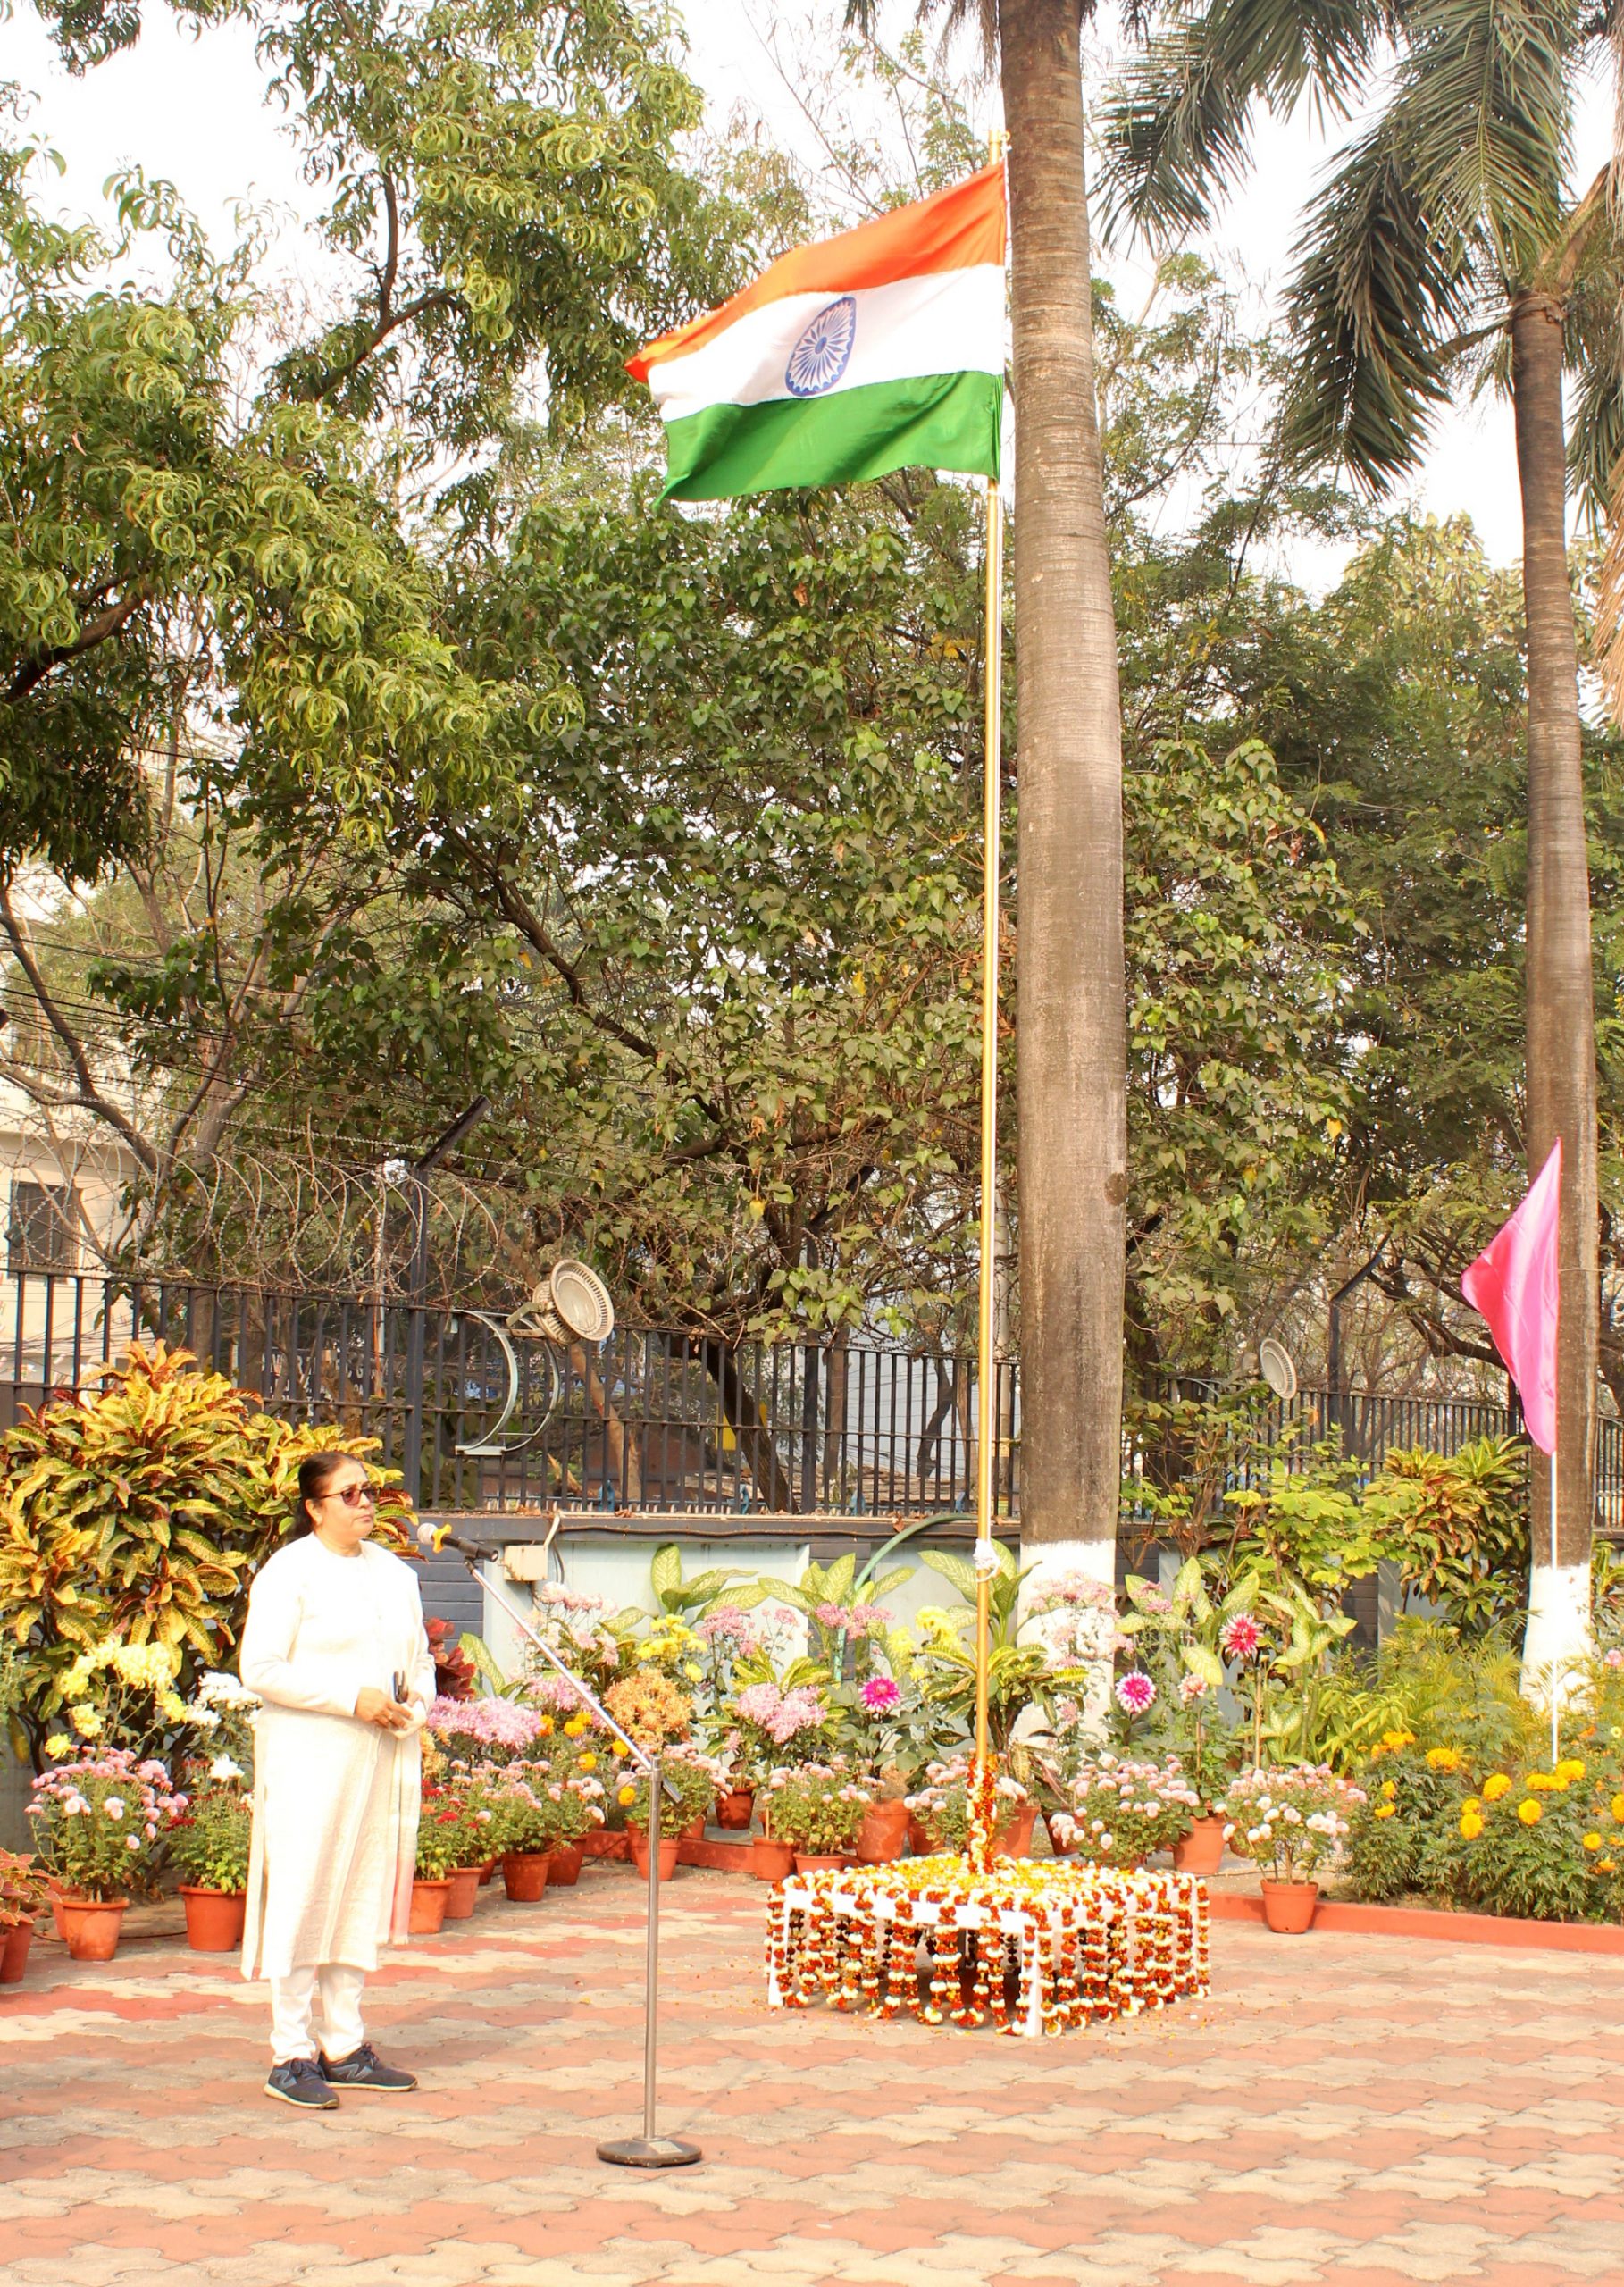 Flag Hoisting on Republic Day Celebration on January 26, 2021